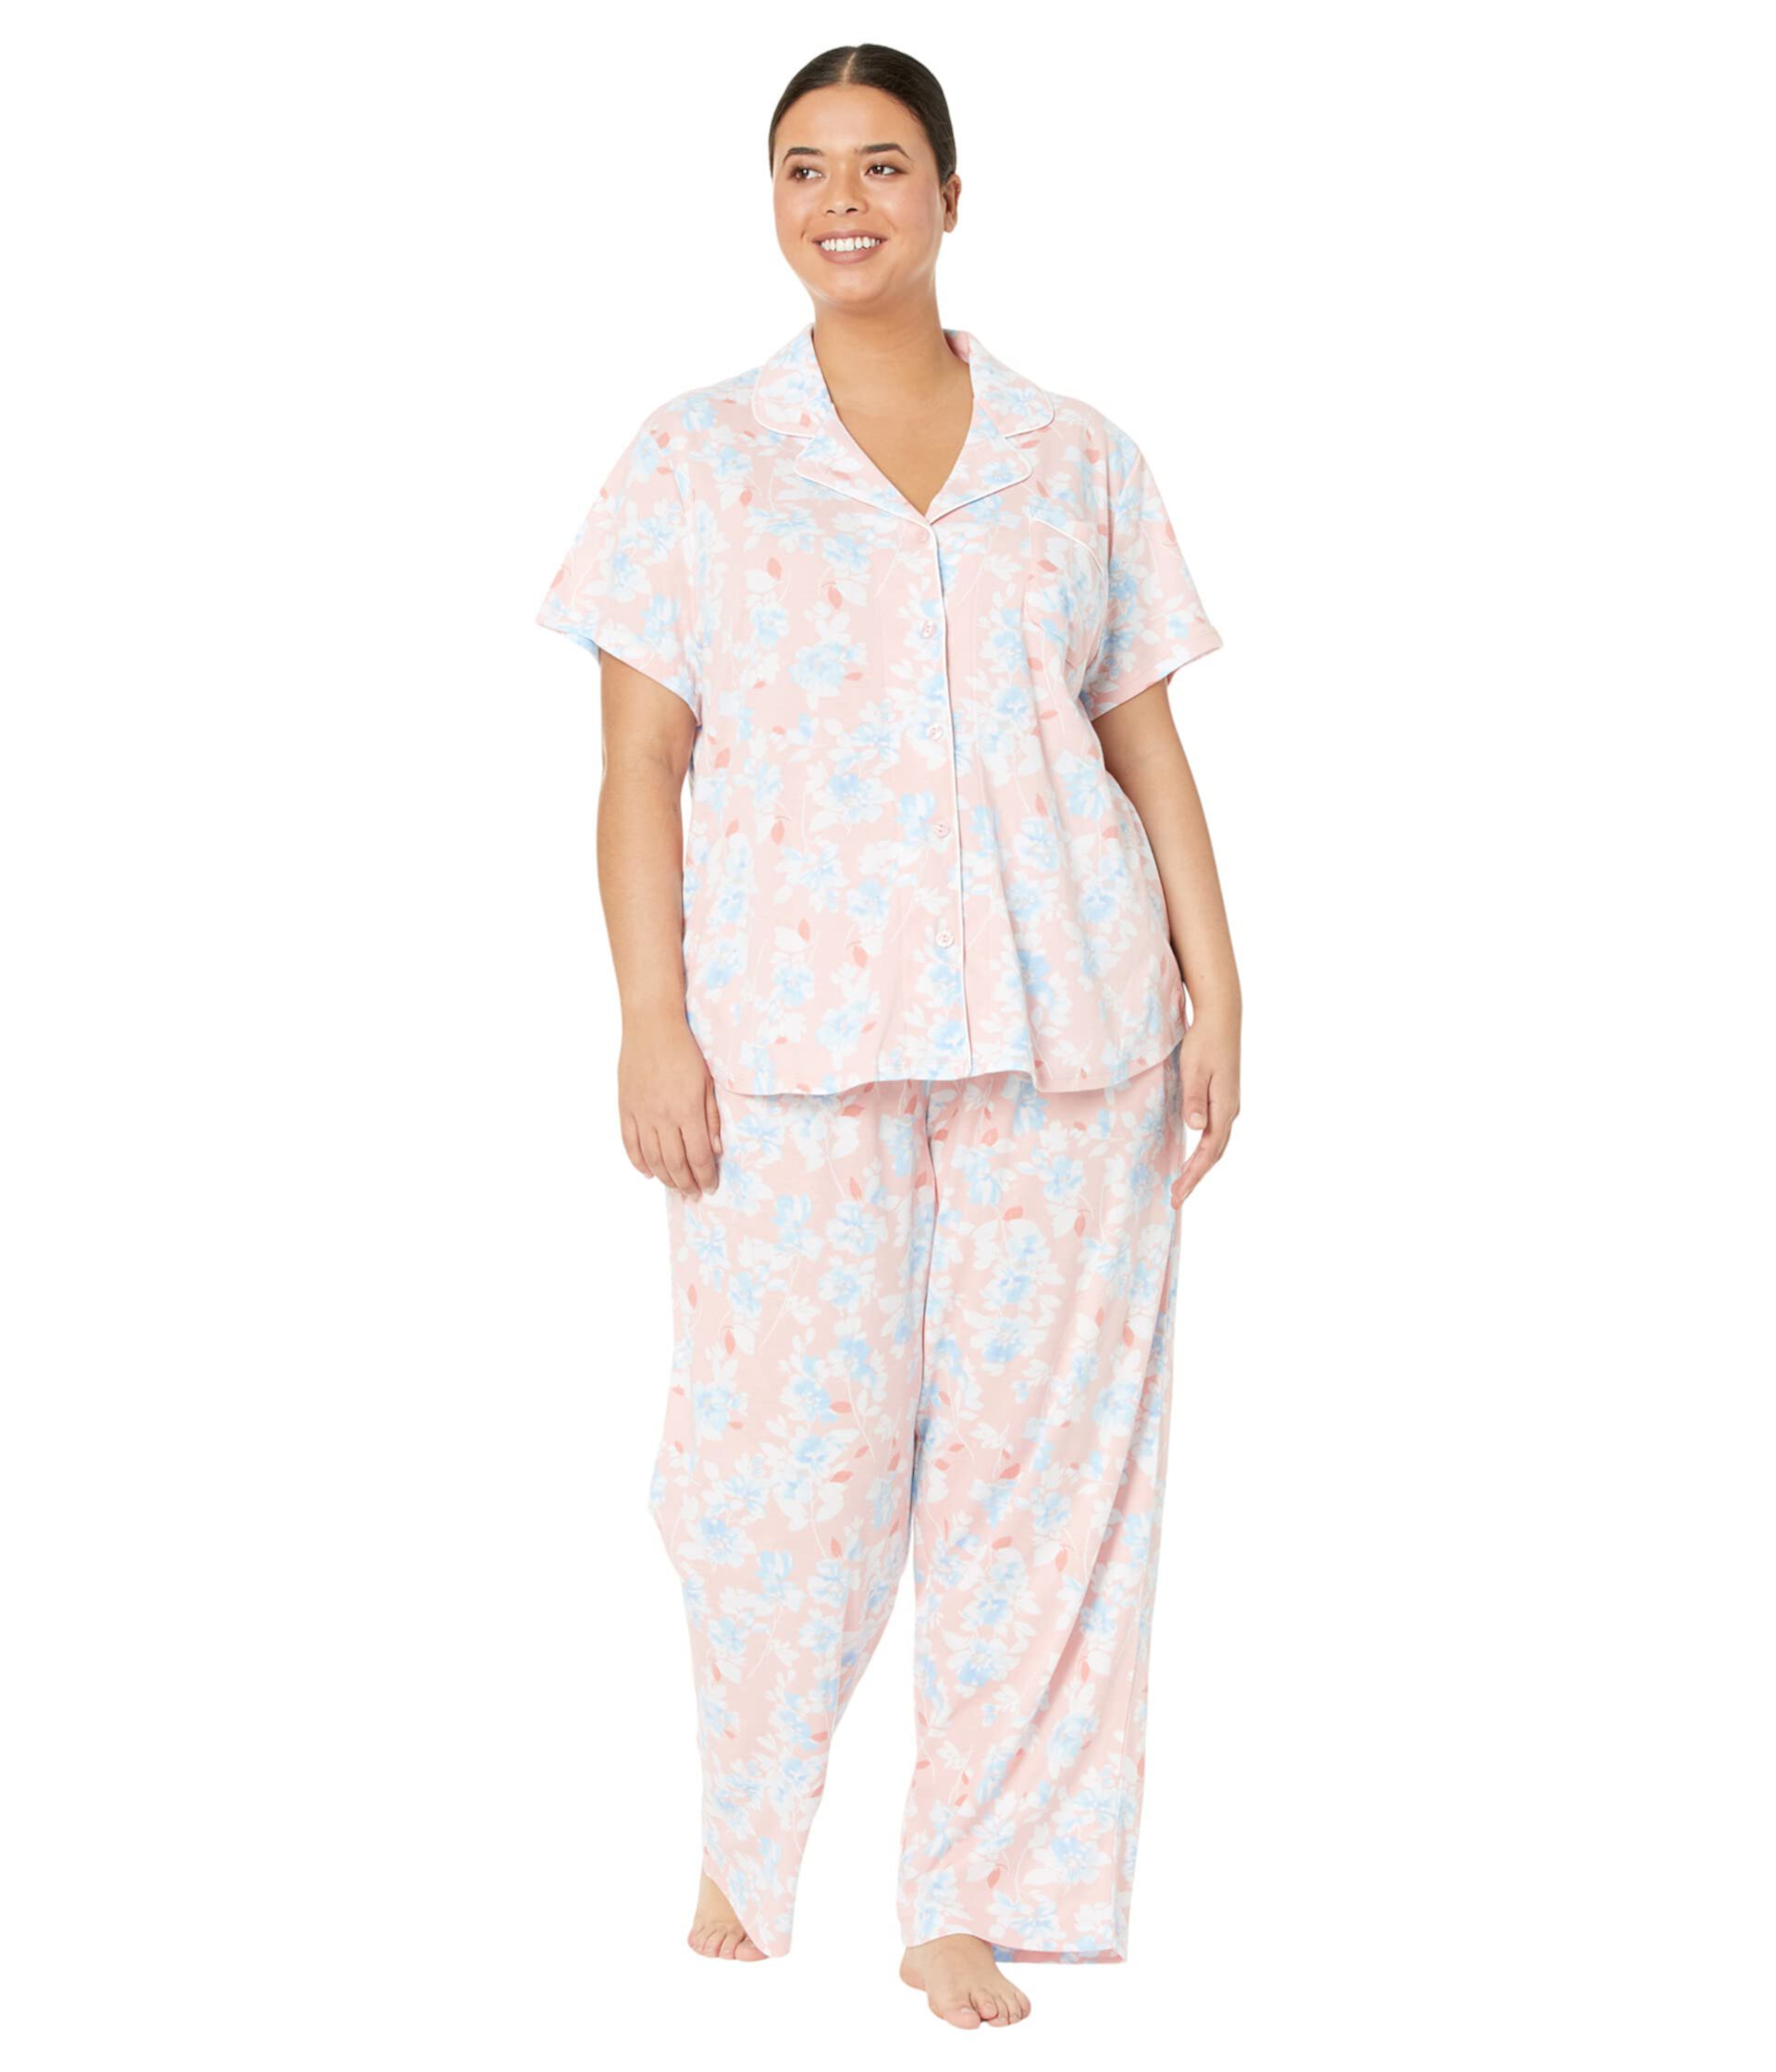 Плюс размер Spring Fling Пижамный комплект Girlfriend с короткими рукавами Karen Neuburger